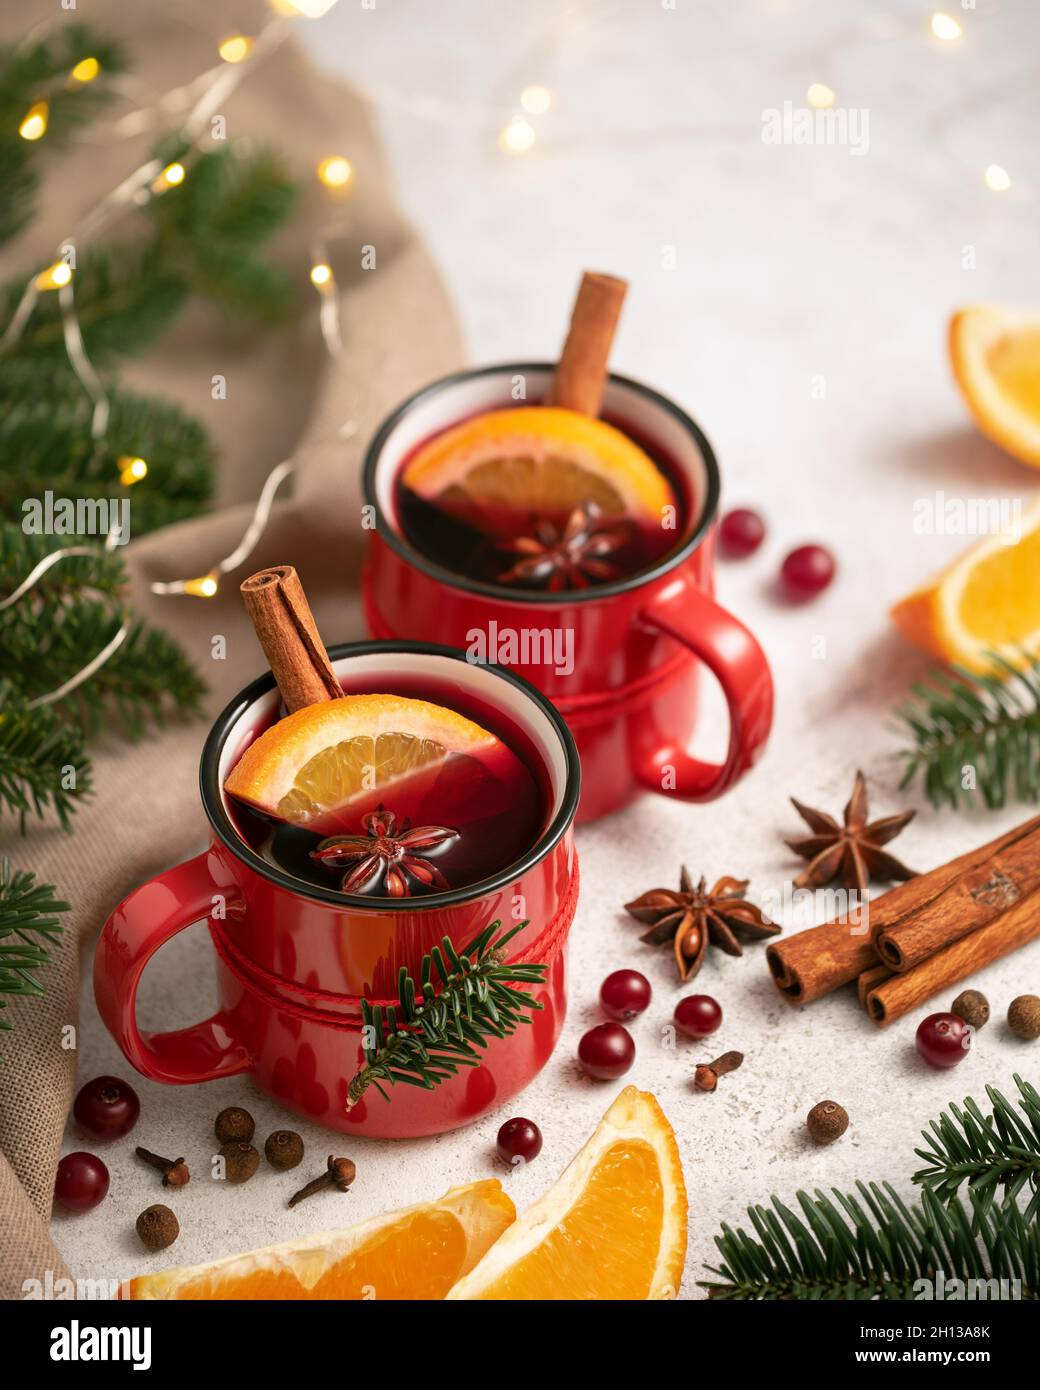 Vin chaud dans une tasse rouge près de l'arbre de Noël et des lumières Banque D'Images